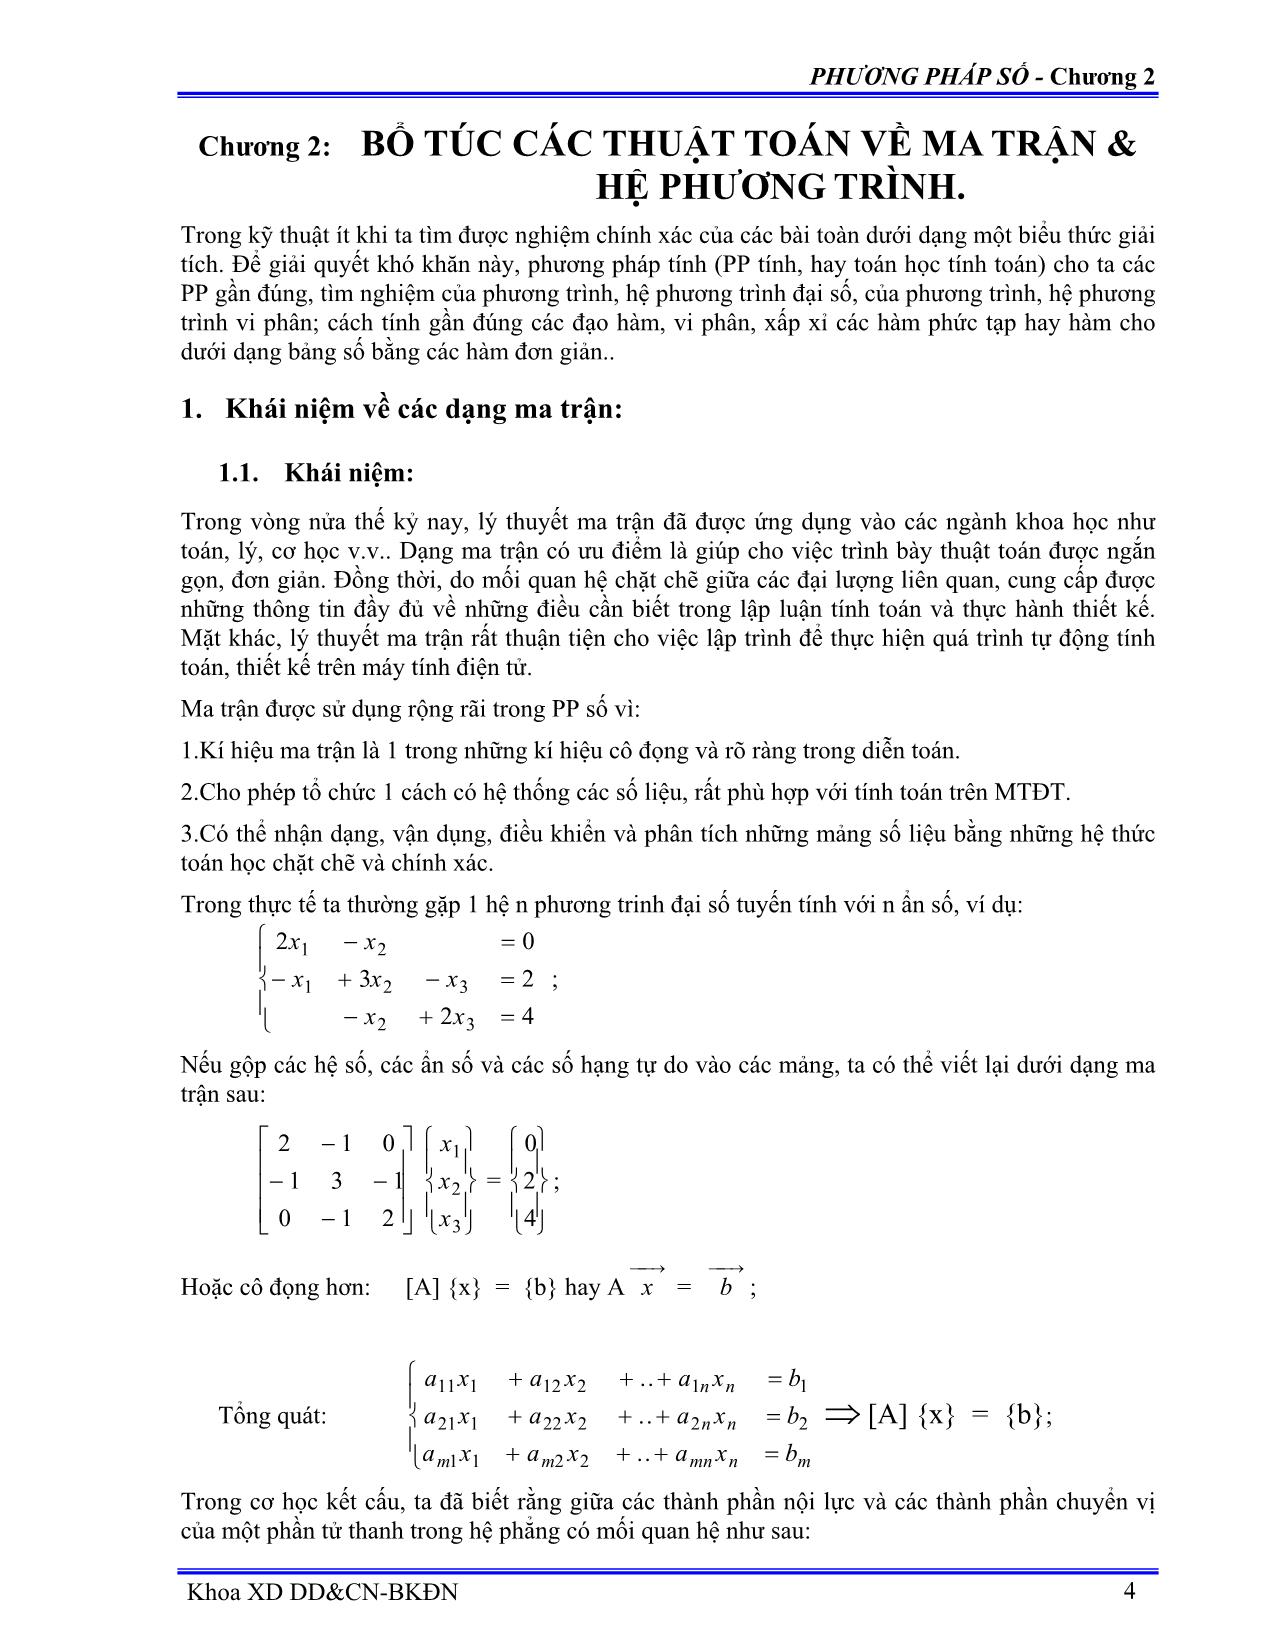 Bài giảng Bổ túc các thuật toán về ma trận và hệ phương trình trang 1